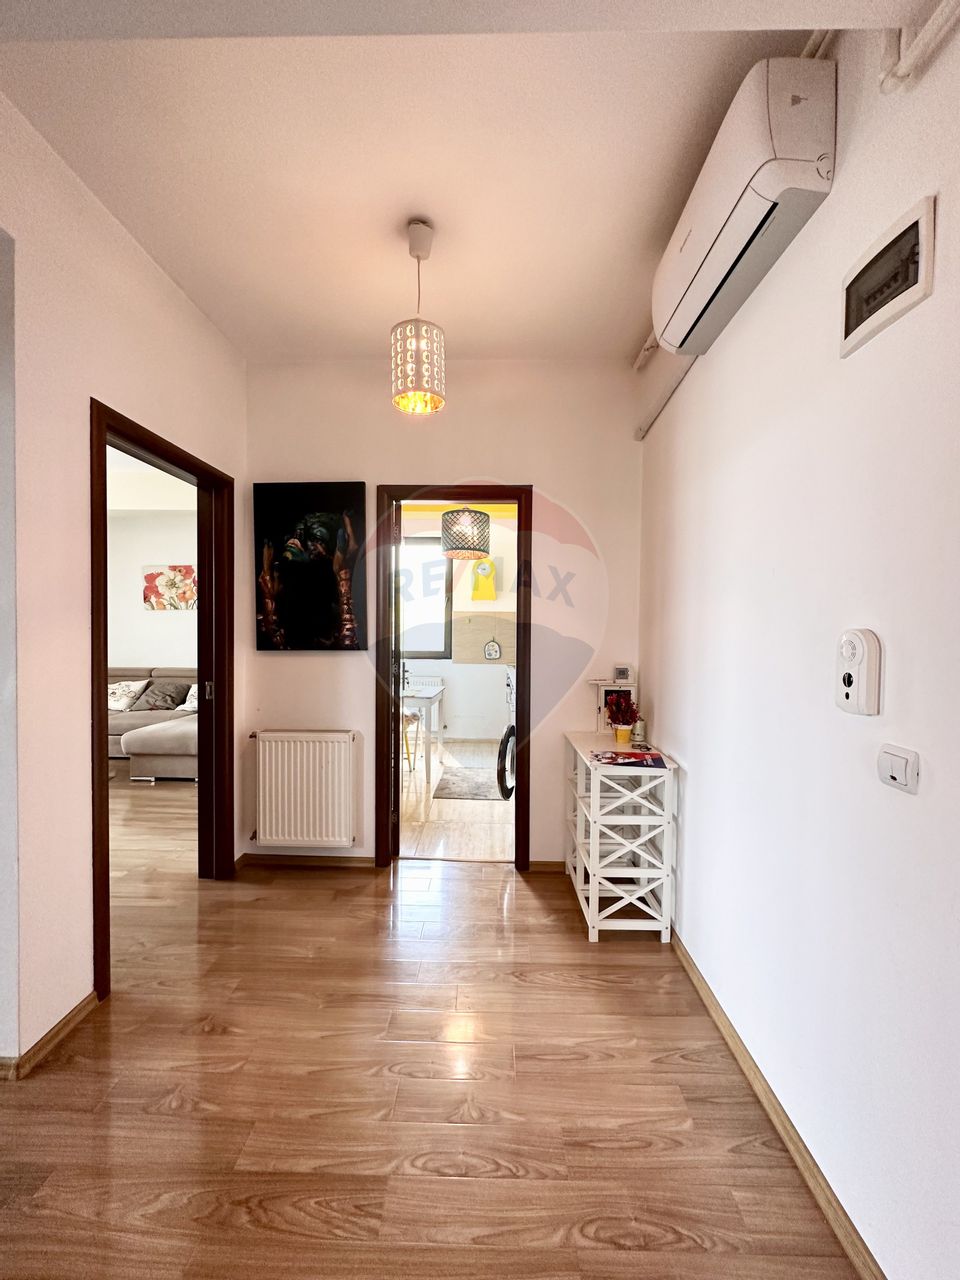 Apartament cu 2 camere de închiriat în zona Bucurestii Noi